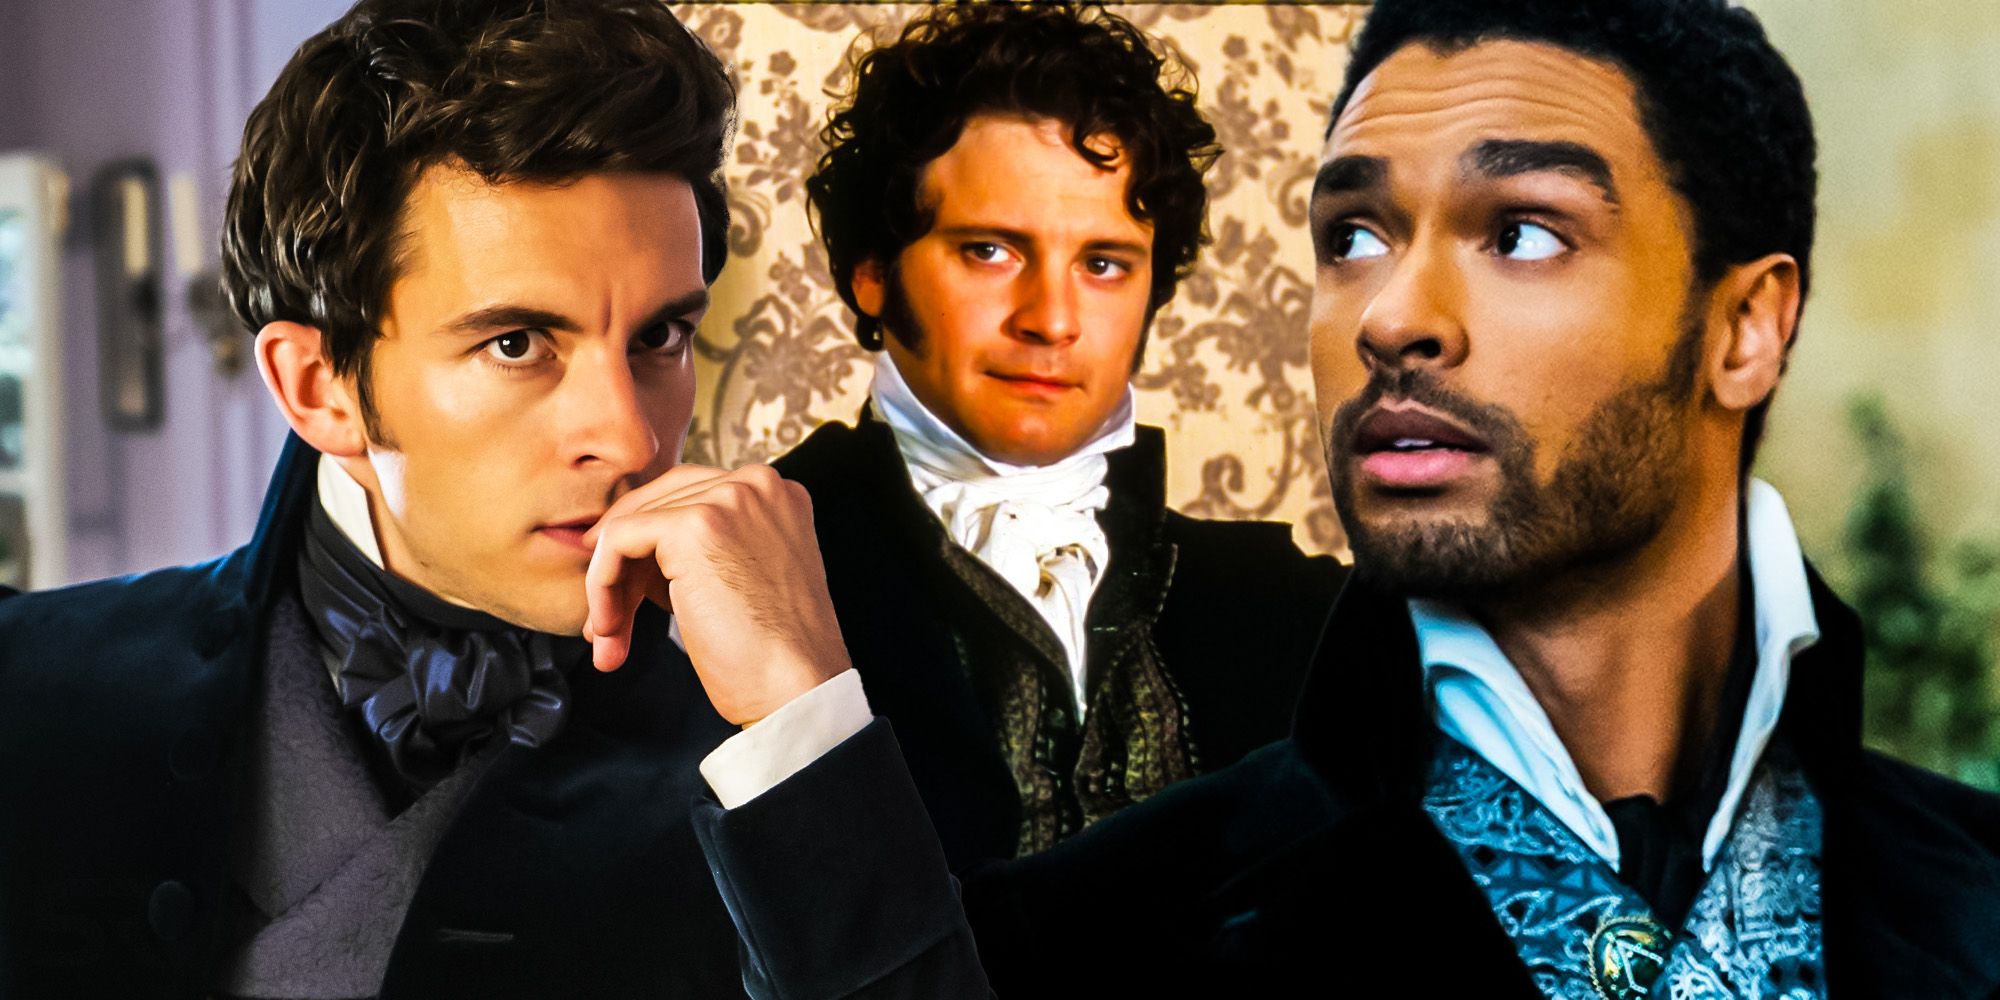 La temporada 2 de Bridgerton demuestra que Anthony era el verdadero Sr. Darcy (no Simon)